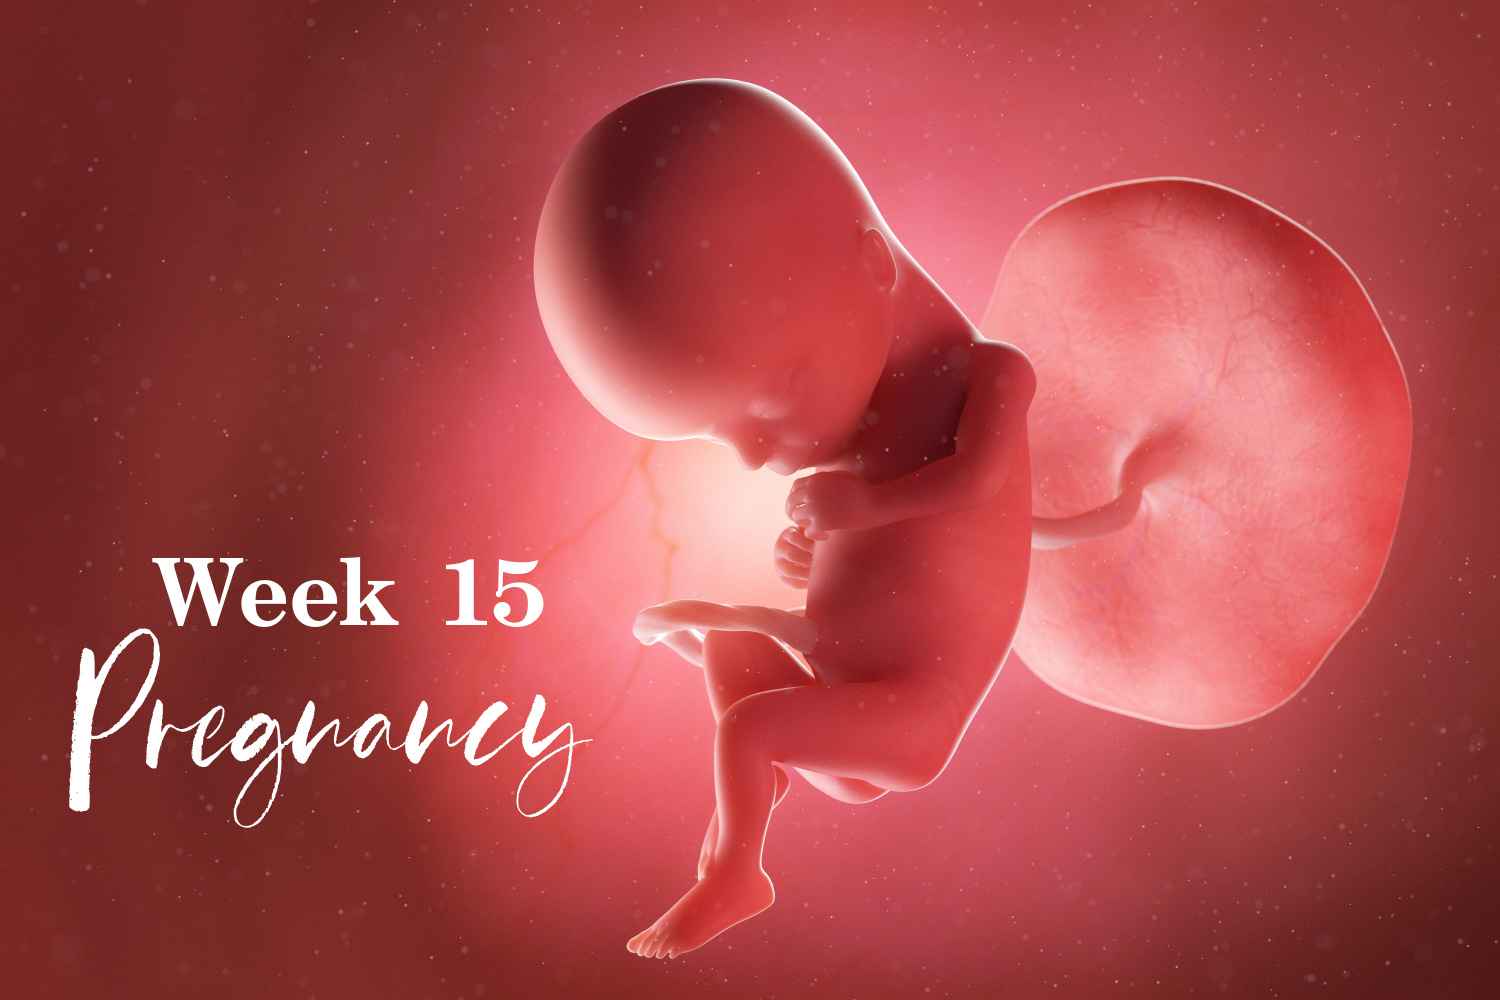 pregnancy week 15